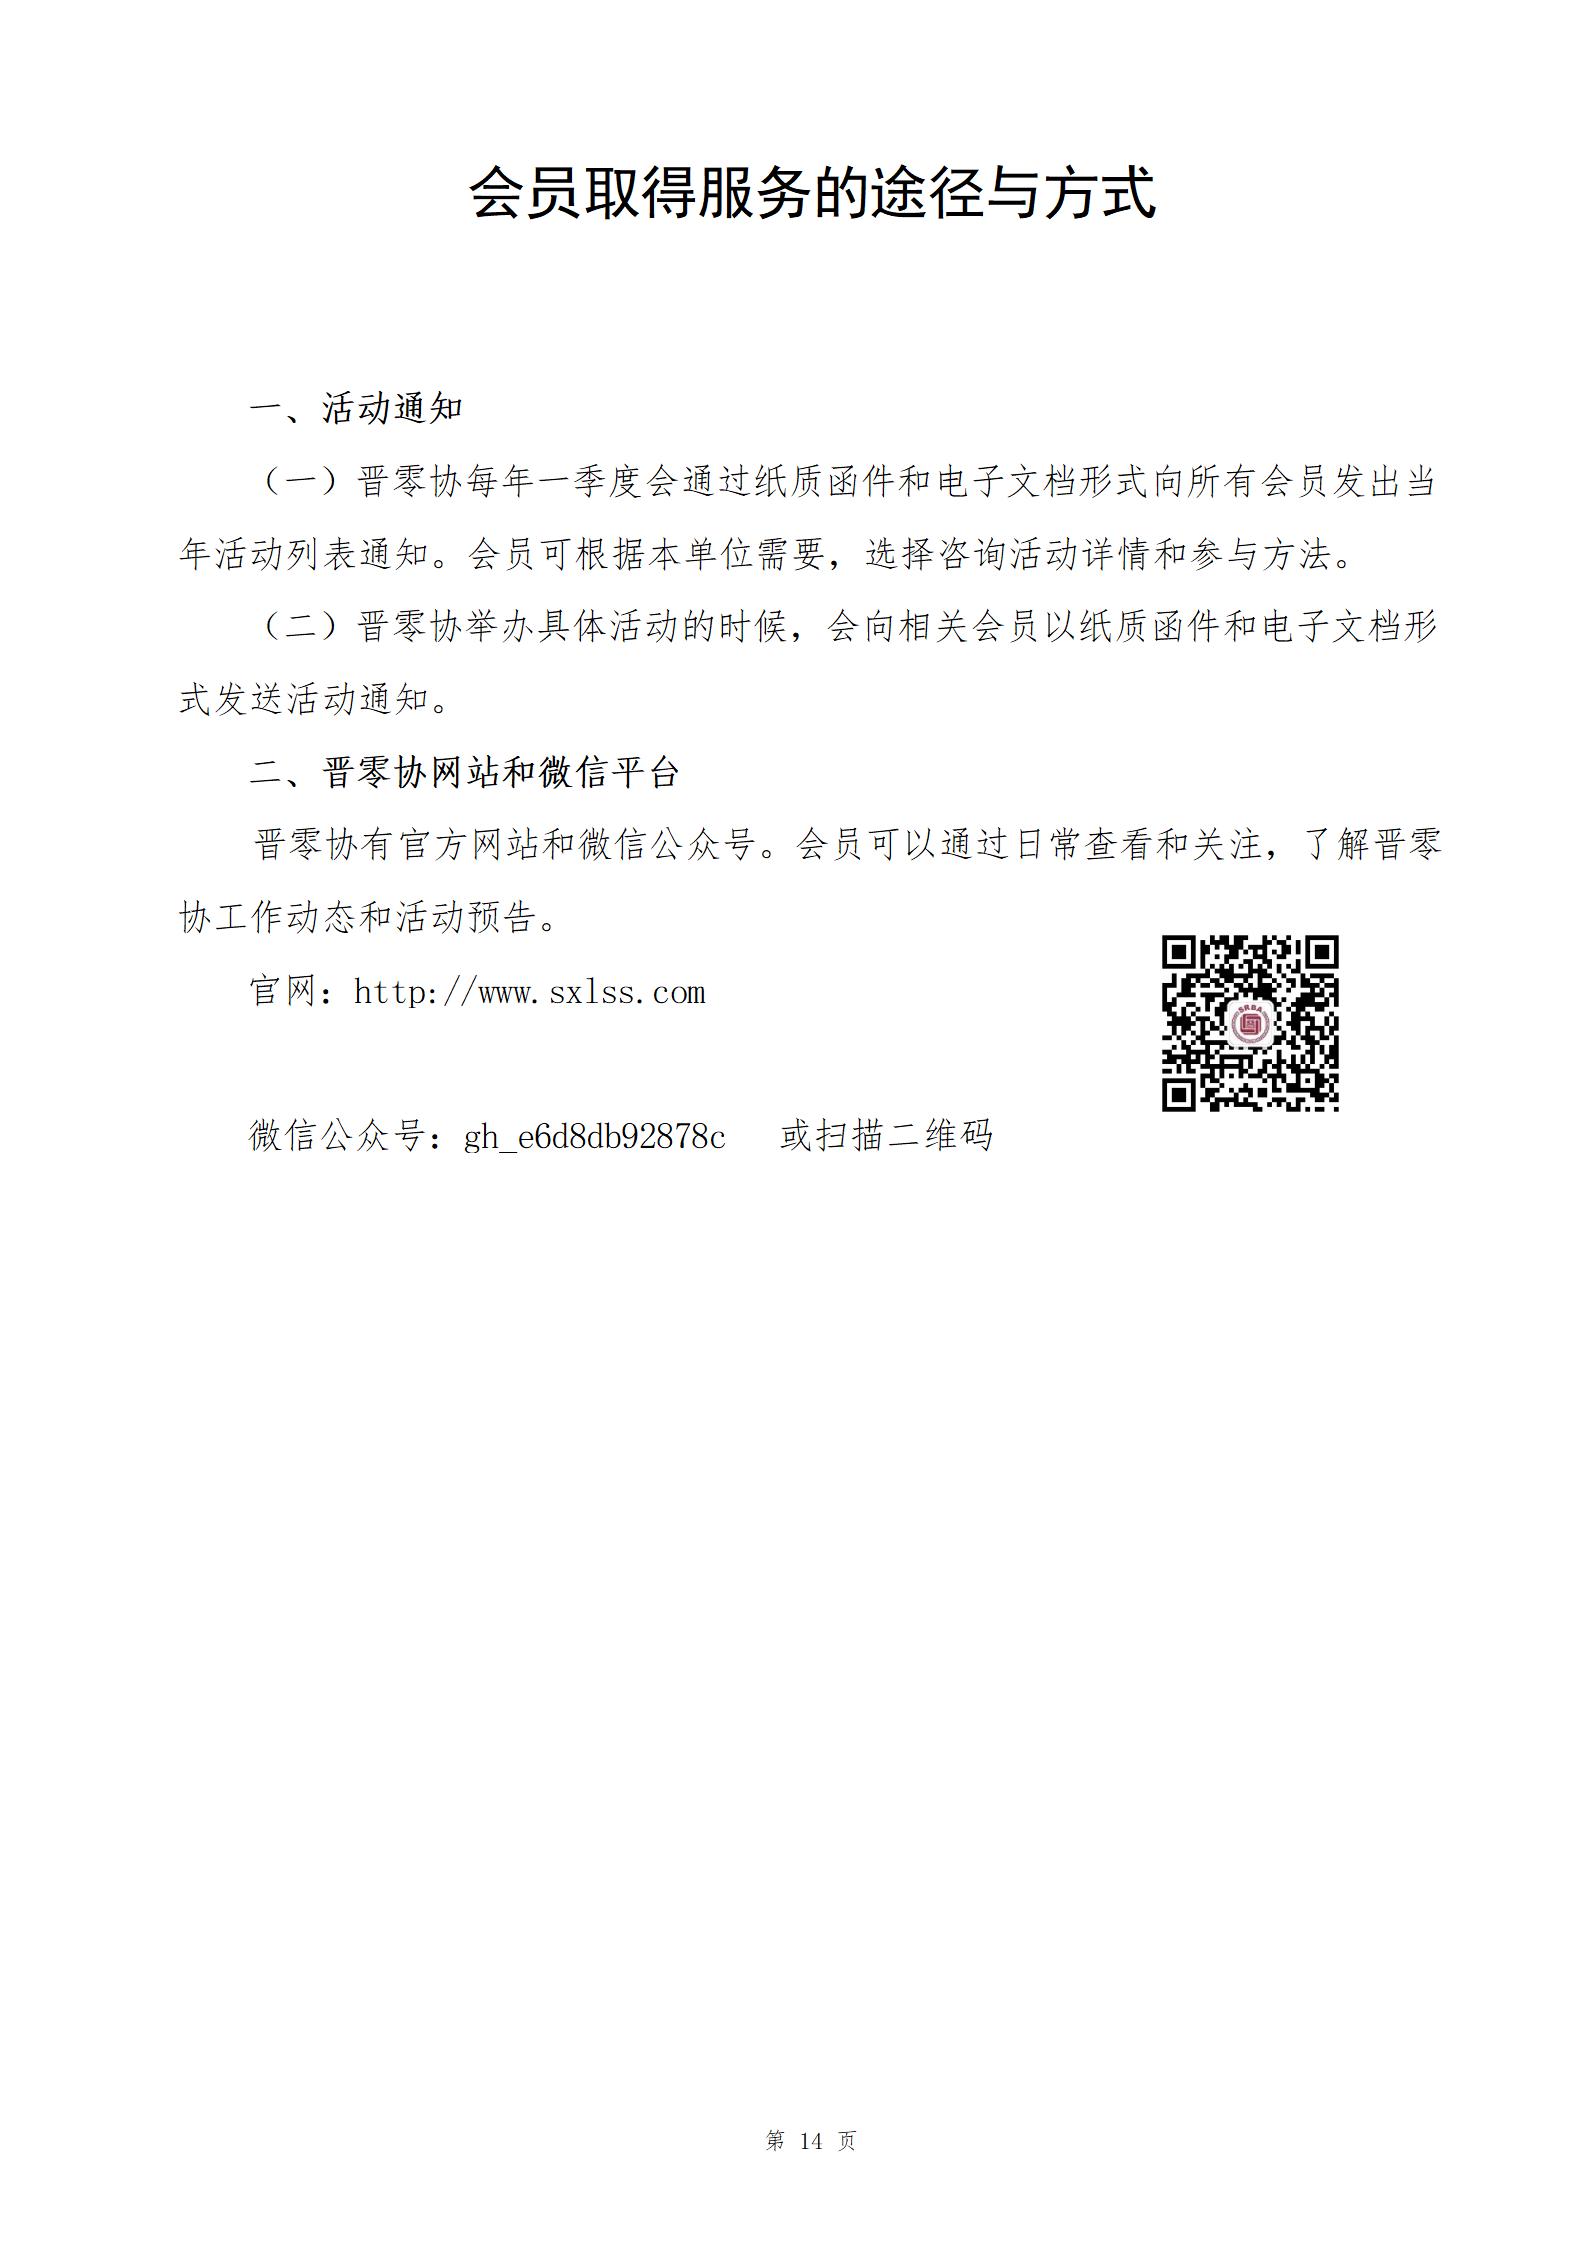 山西省零售商行业协会入会指南2022_14.jpg